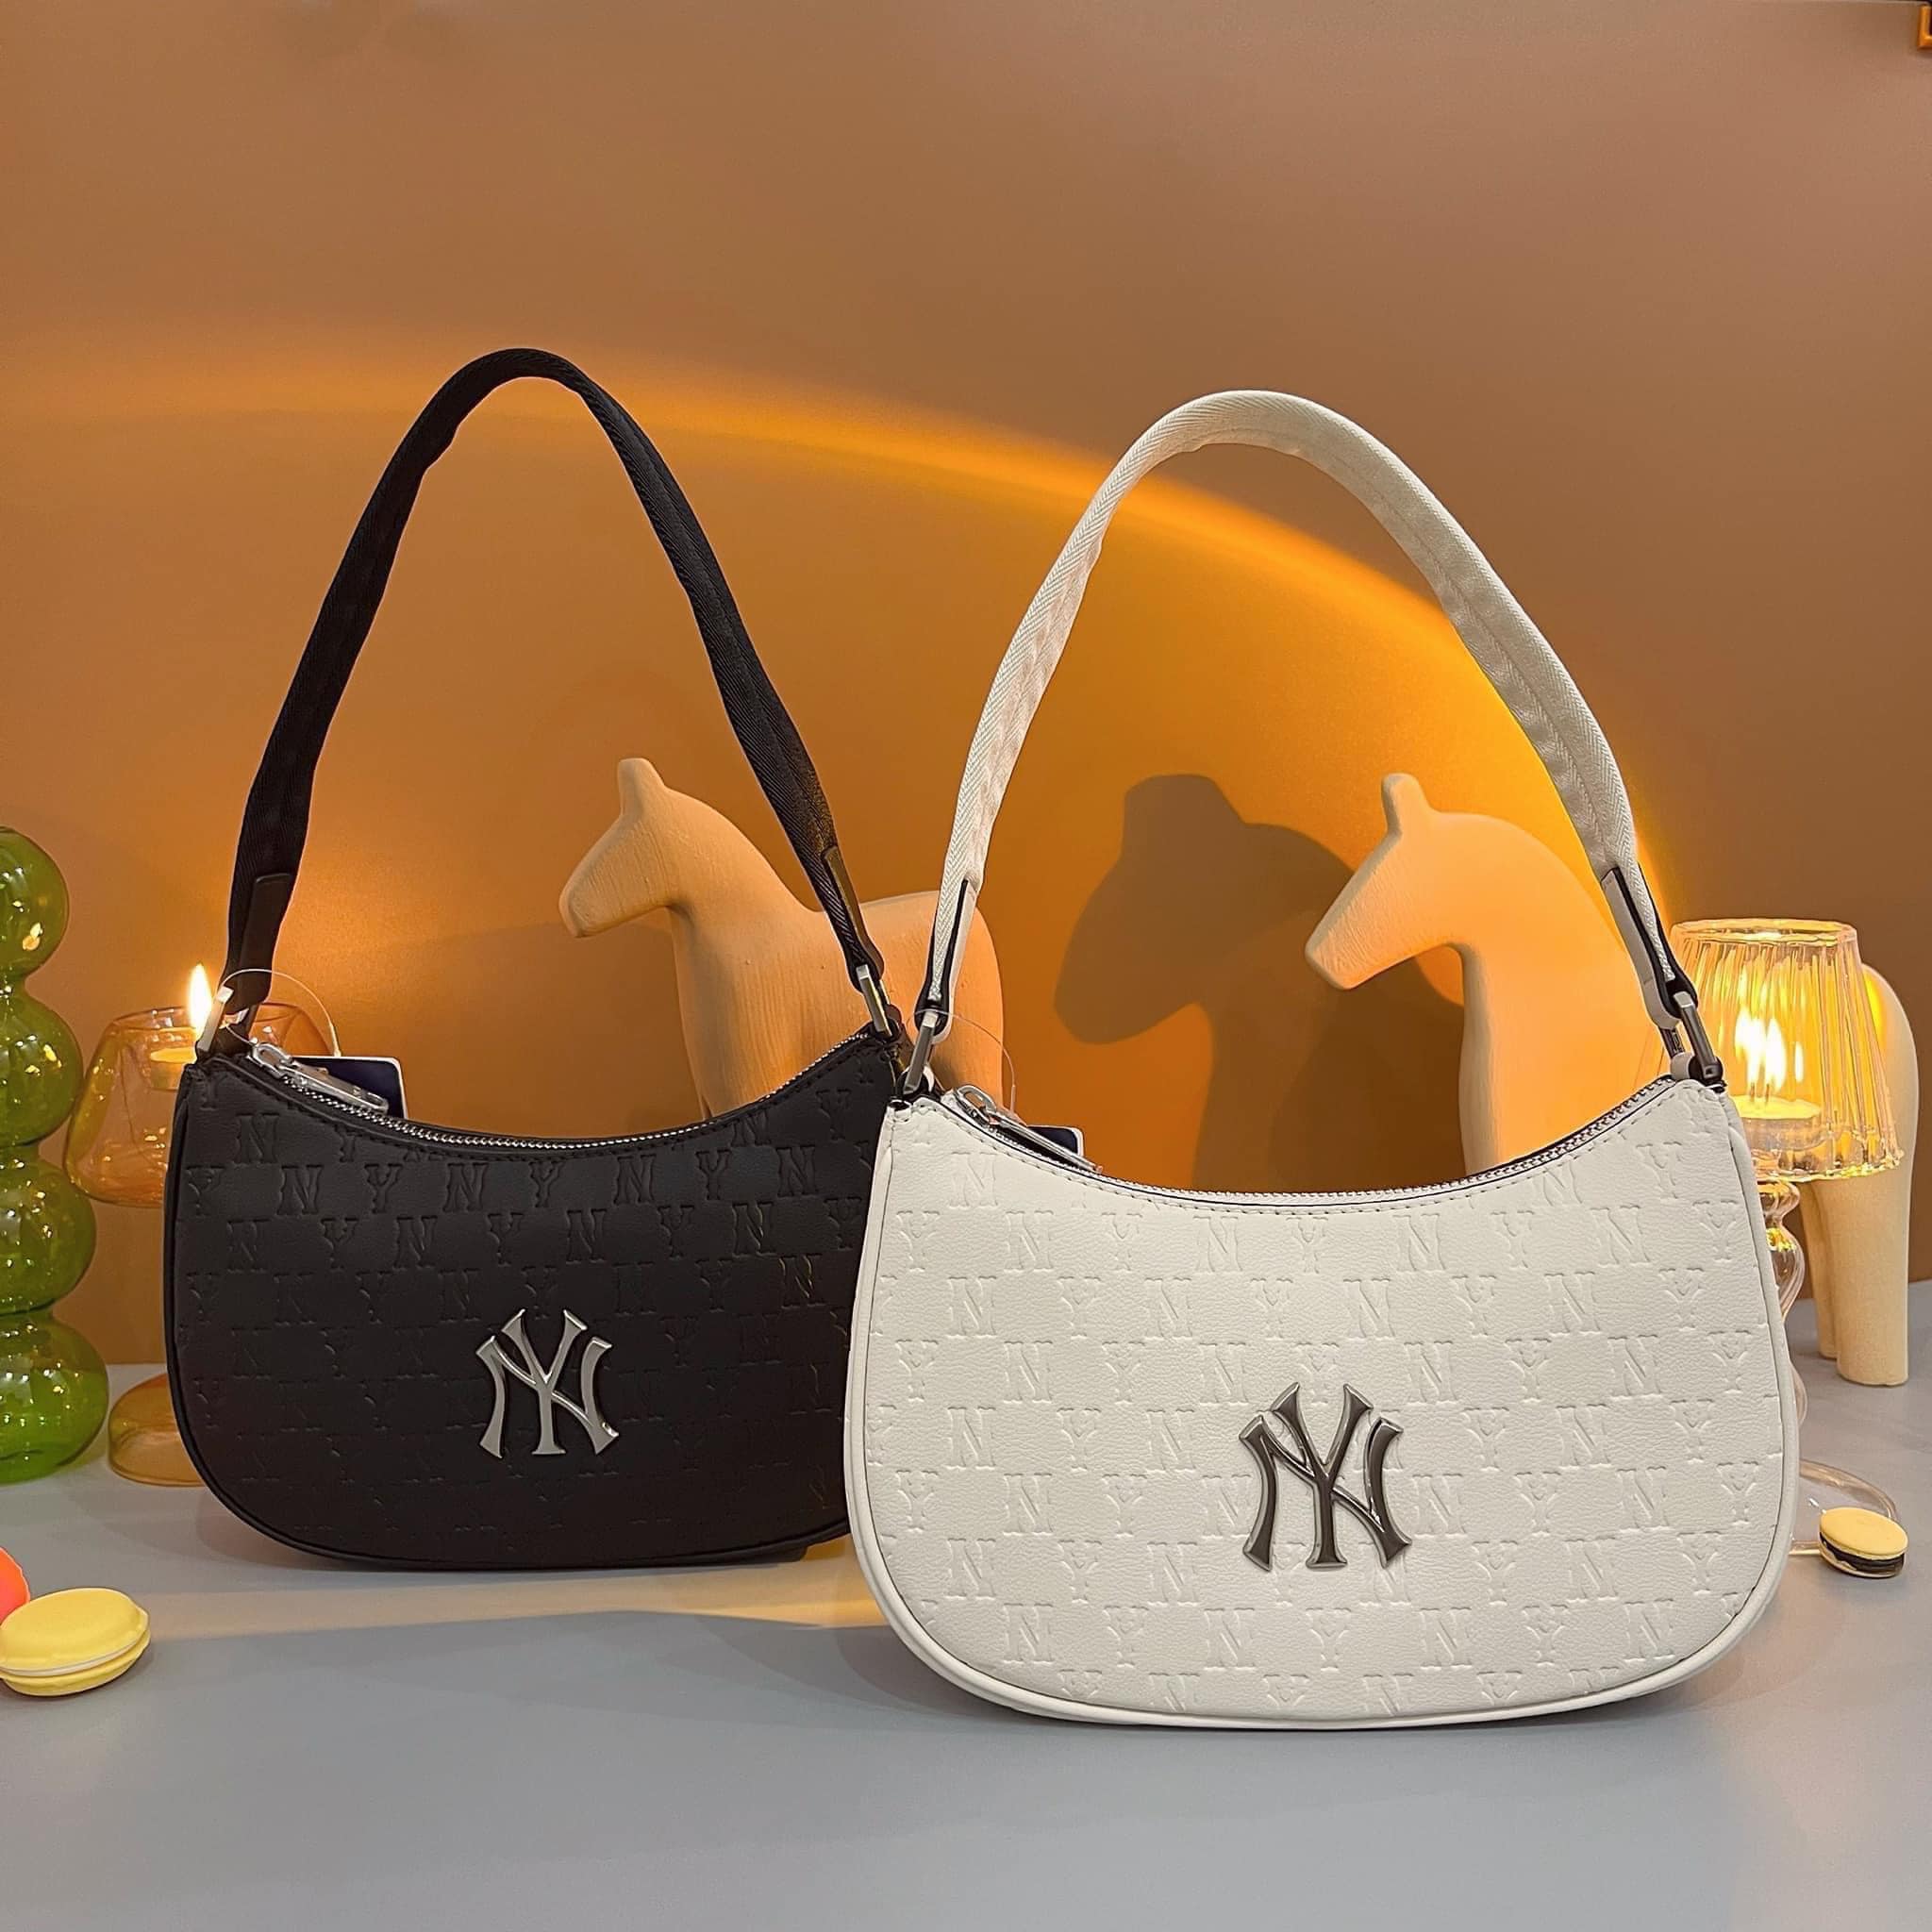 Túi kẹp nách nữ MLB NY màu đen mẫu mới nhất Solid New York Yankees Black